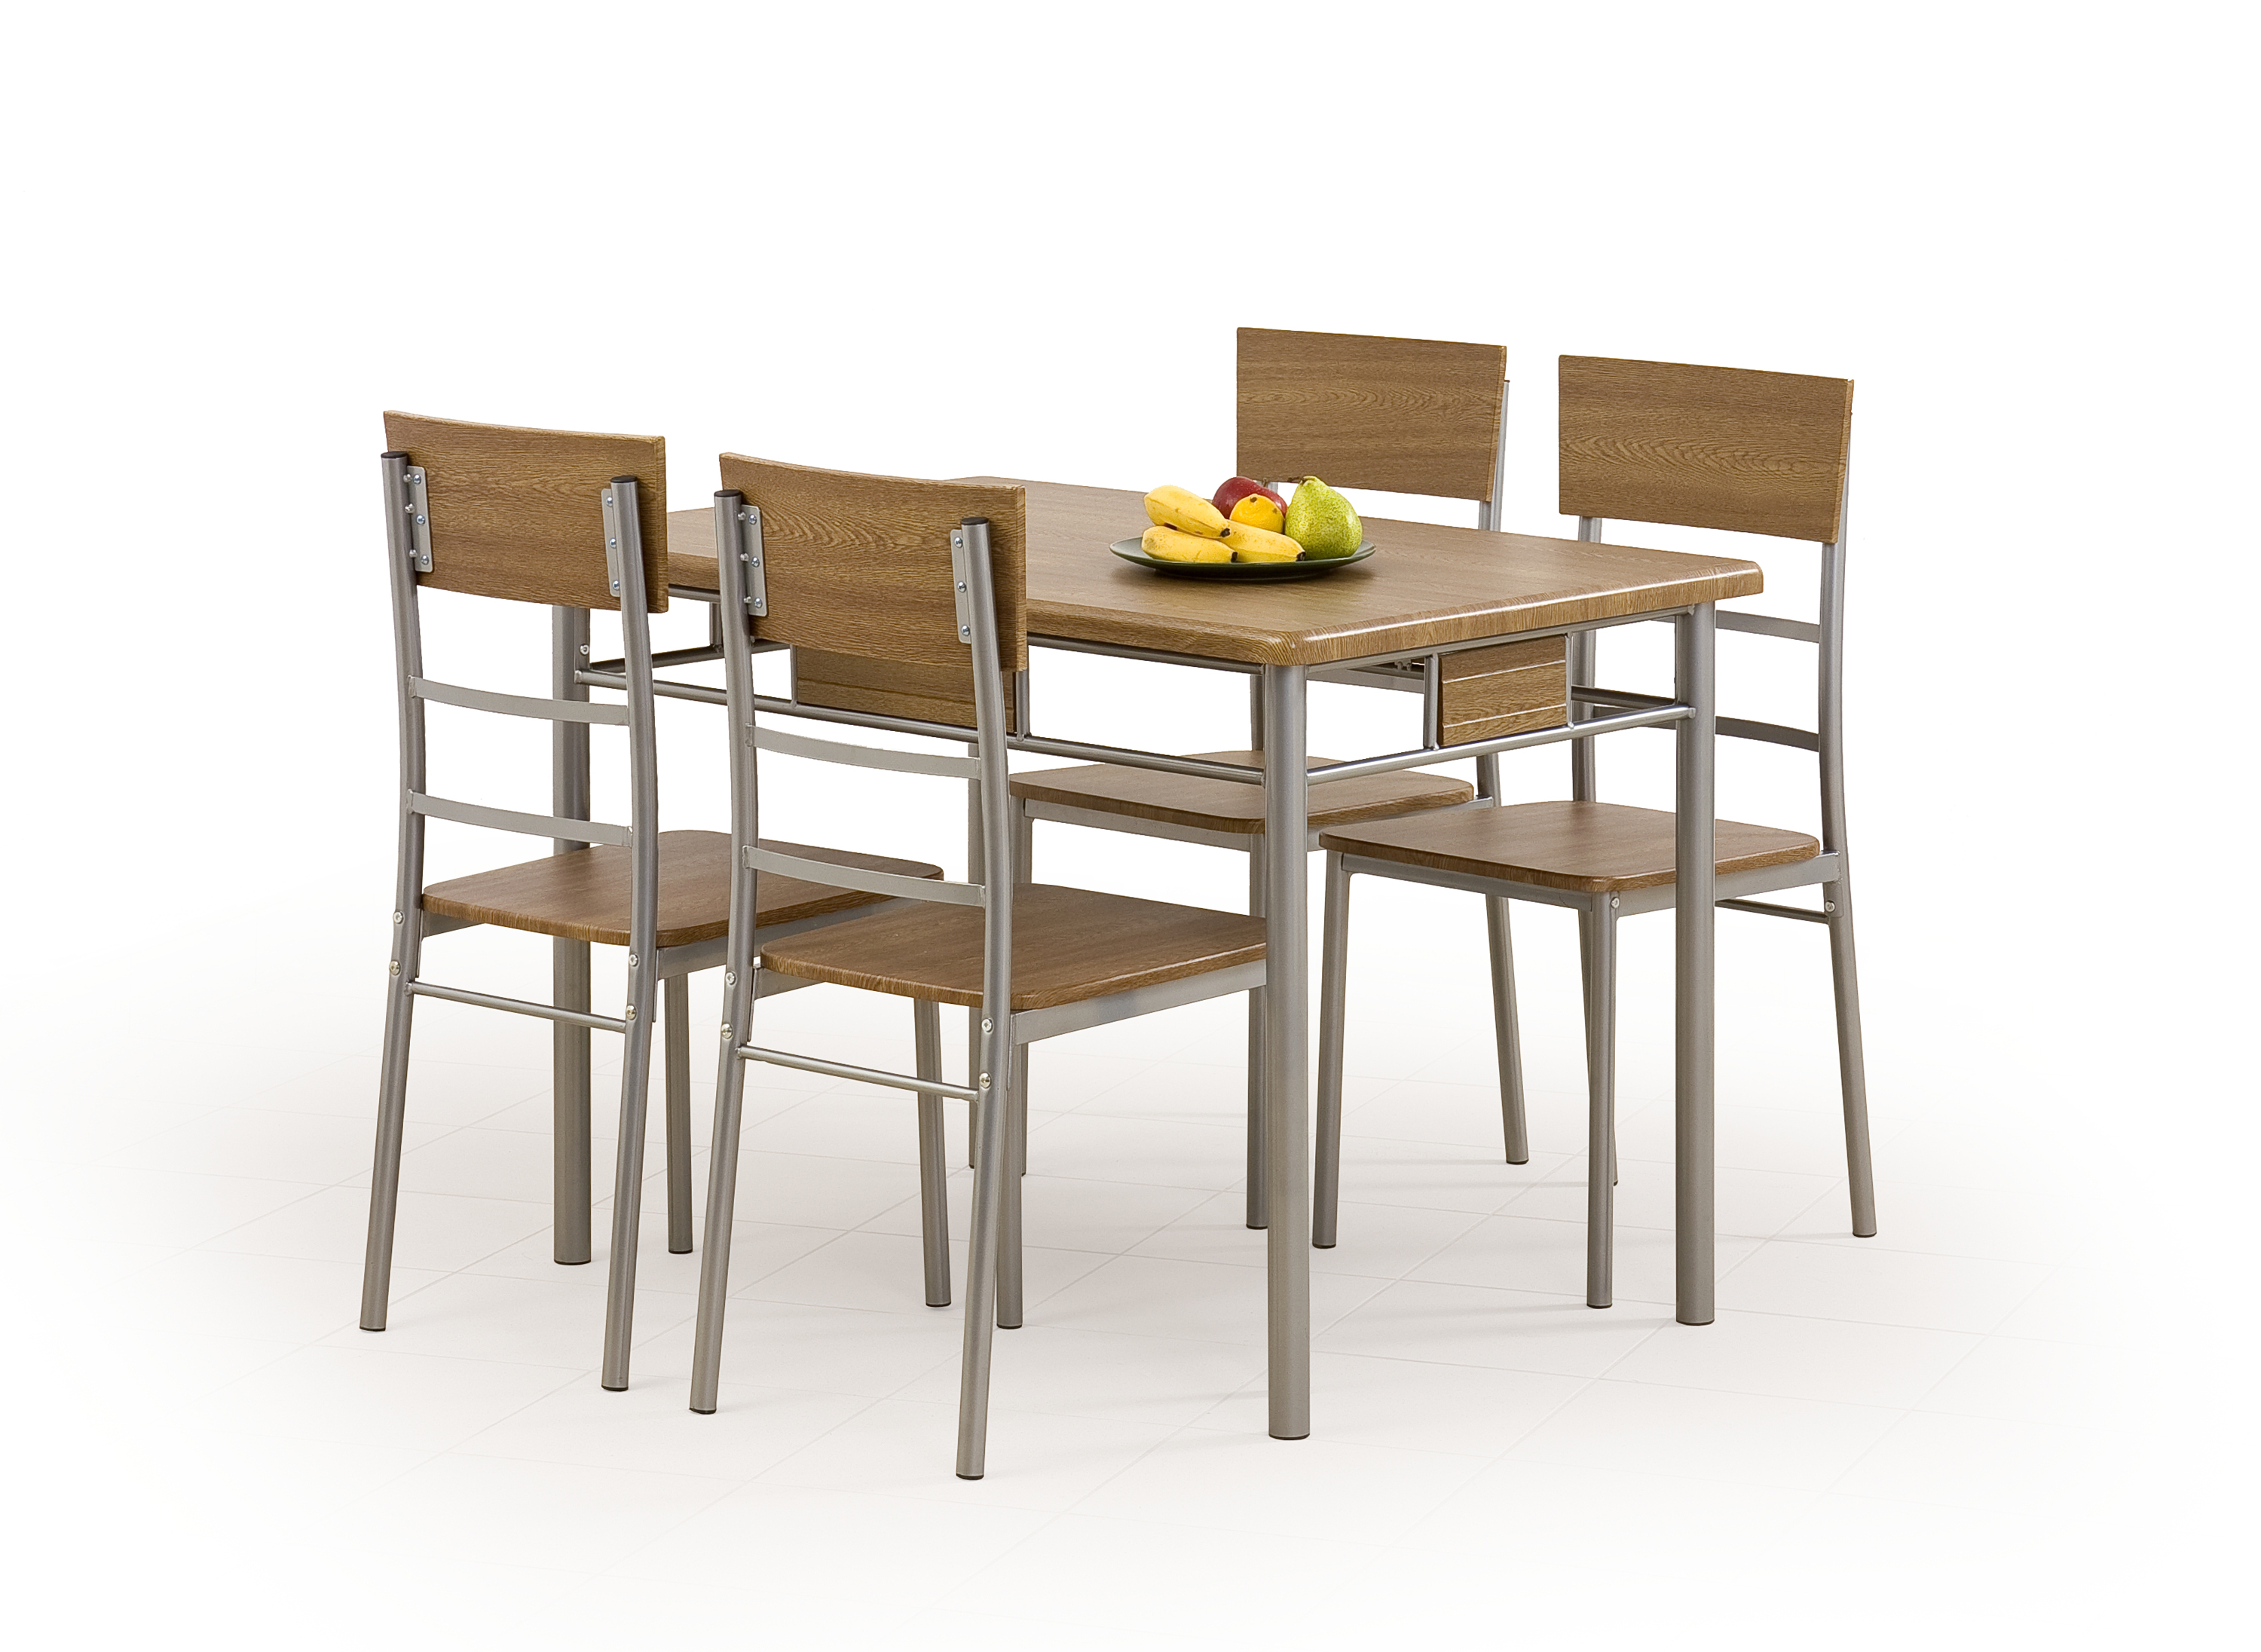 NATANIEL – NATAN készlet asztal + 4 szék (1 készlet = 1 csomag)